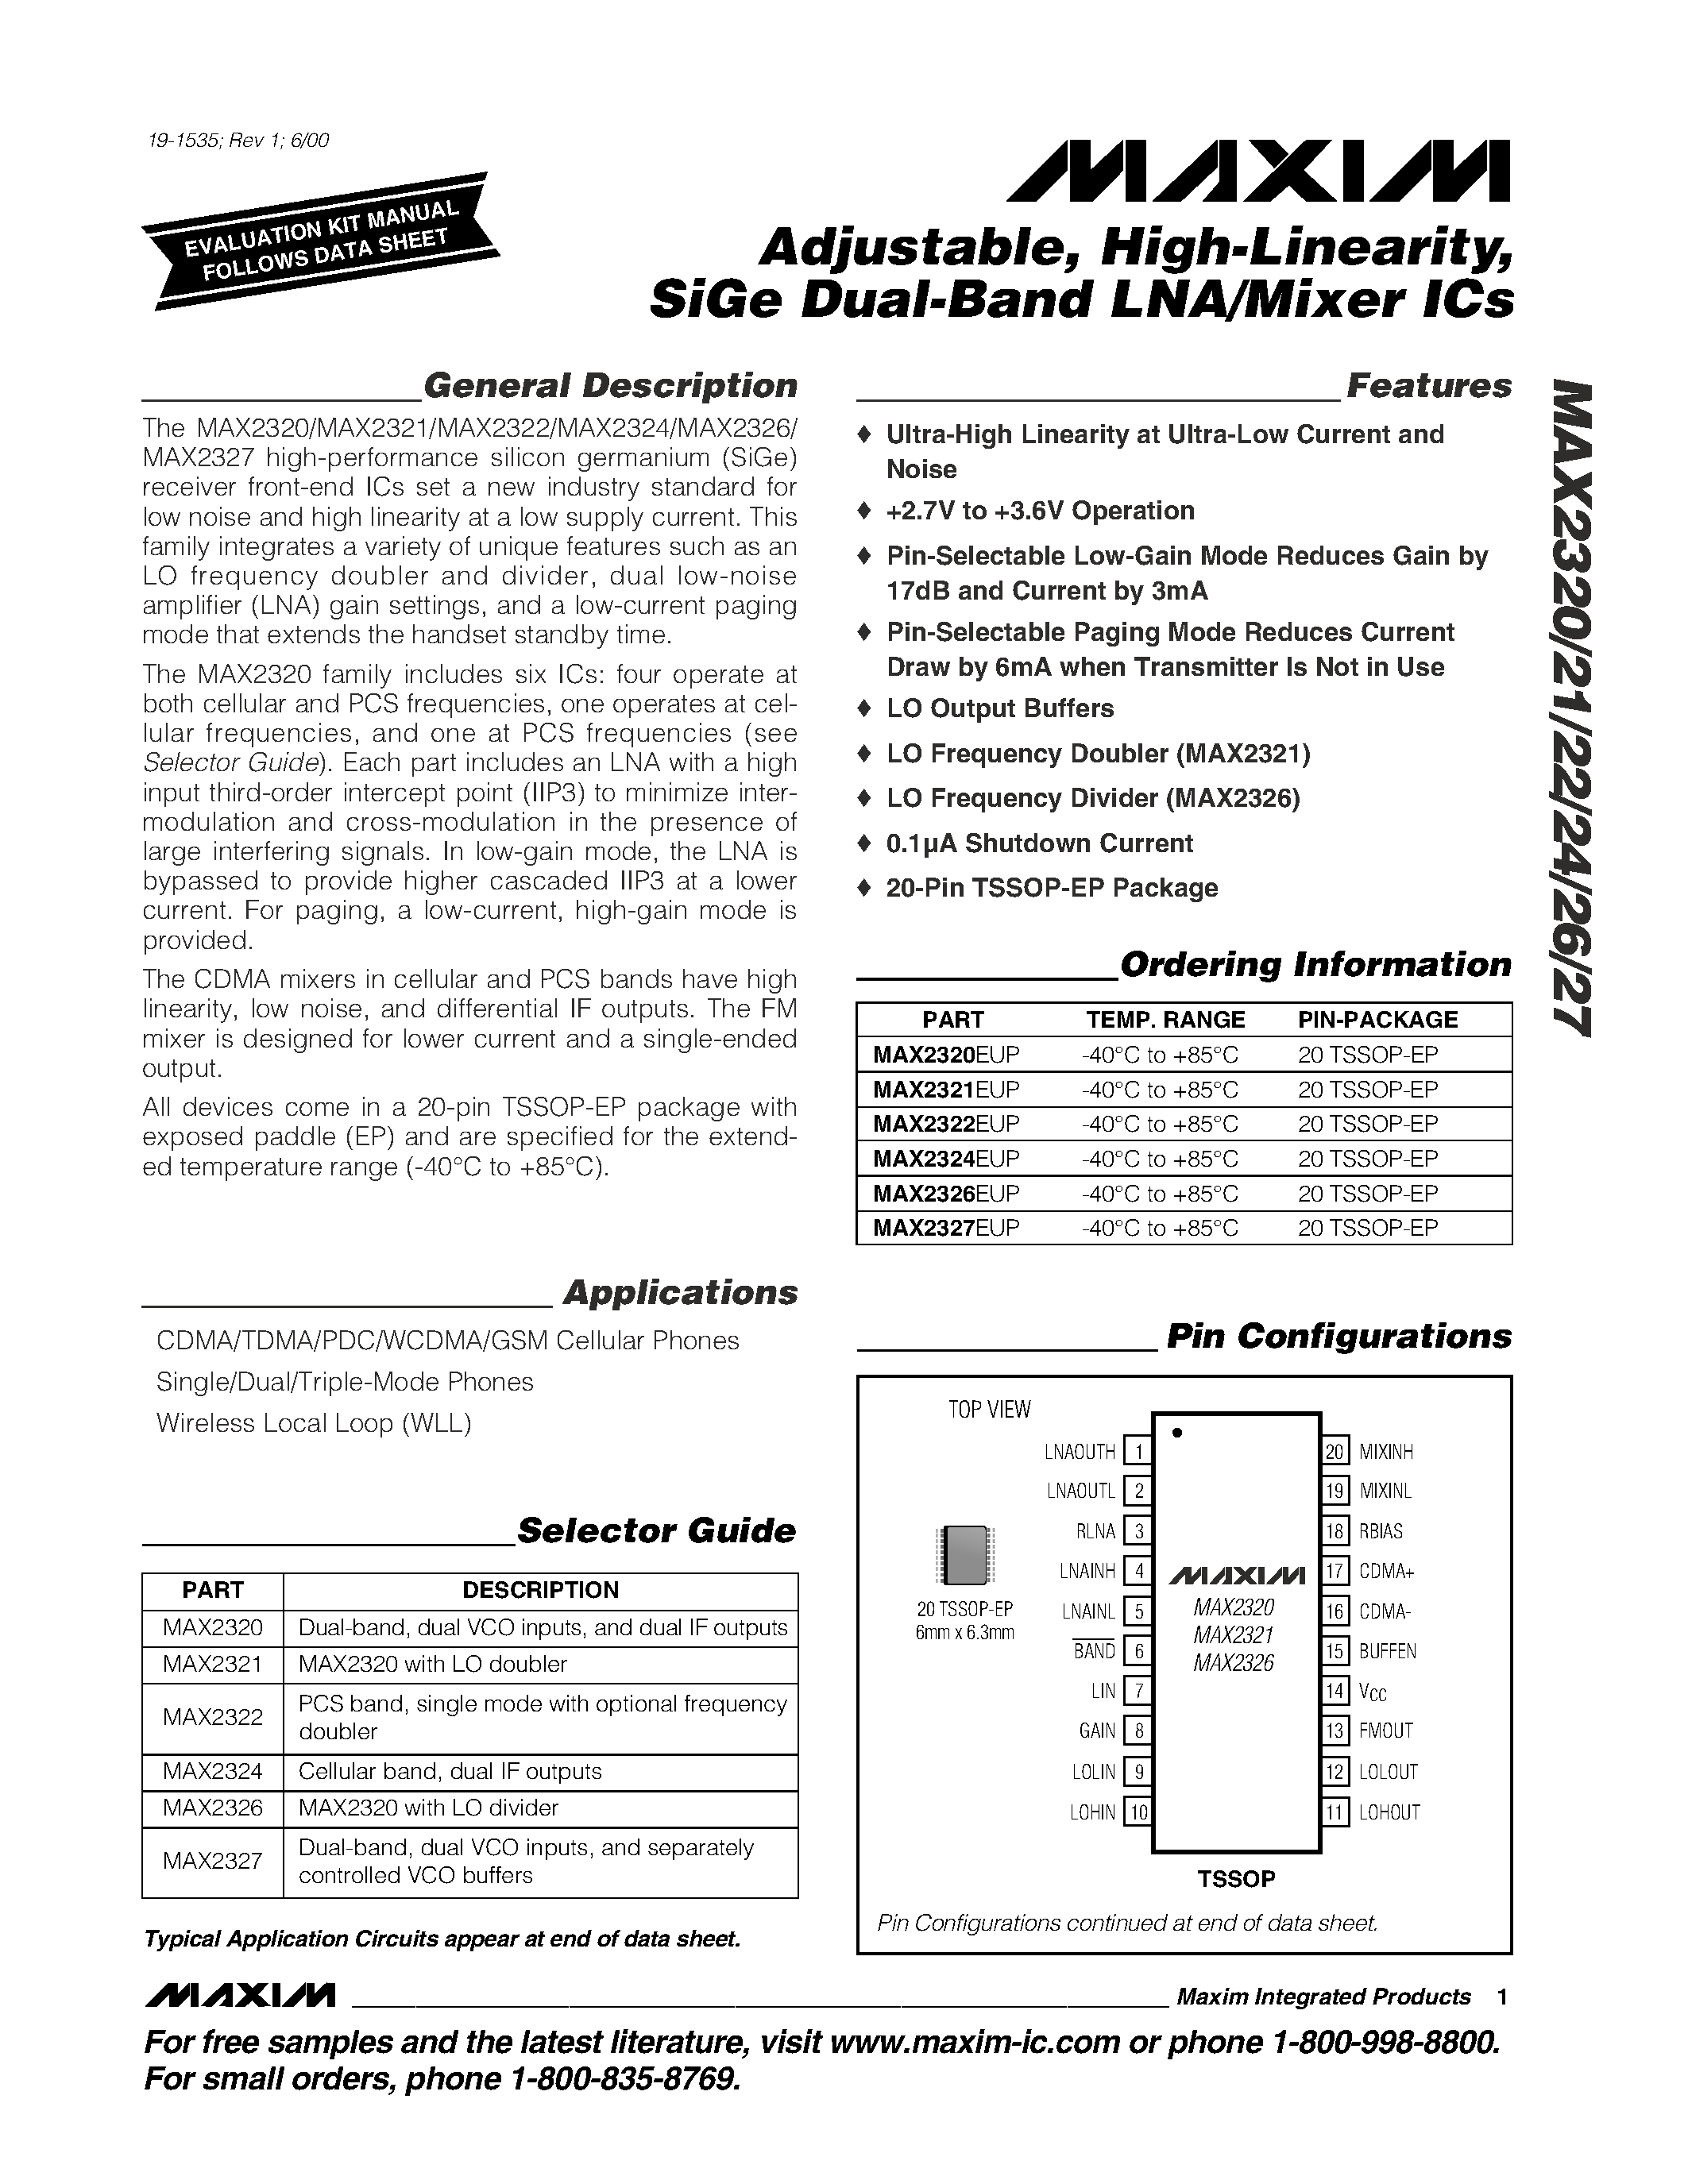 Даташит MAX2325 - Adjustable / High-Linearity / SiGe Dual-Band LNA/Mixer ICs страница 1